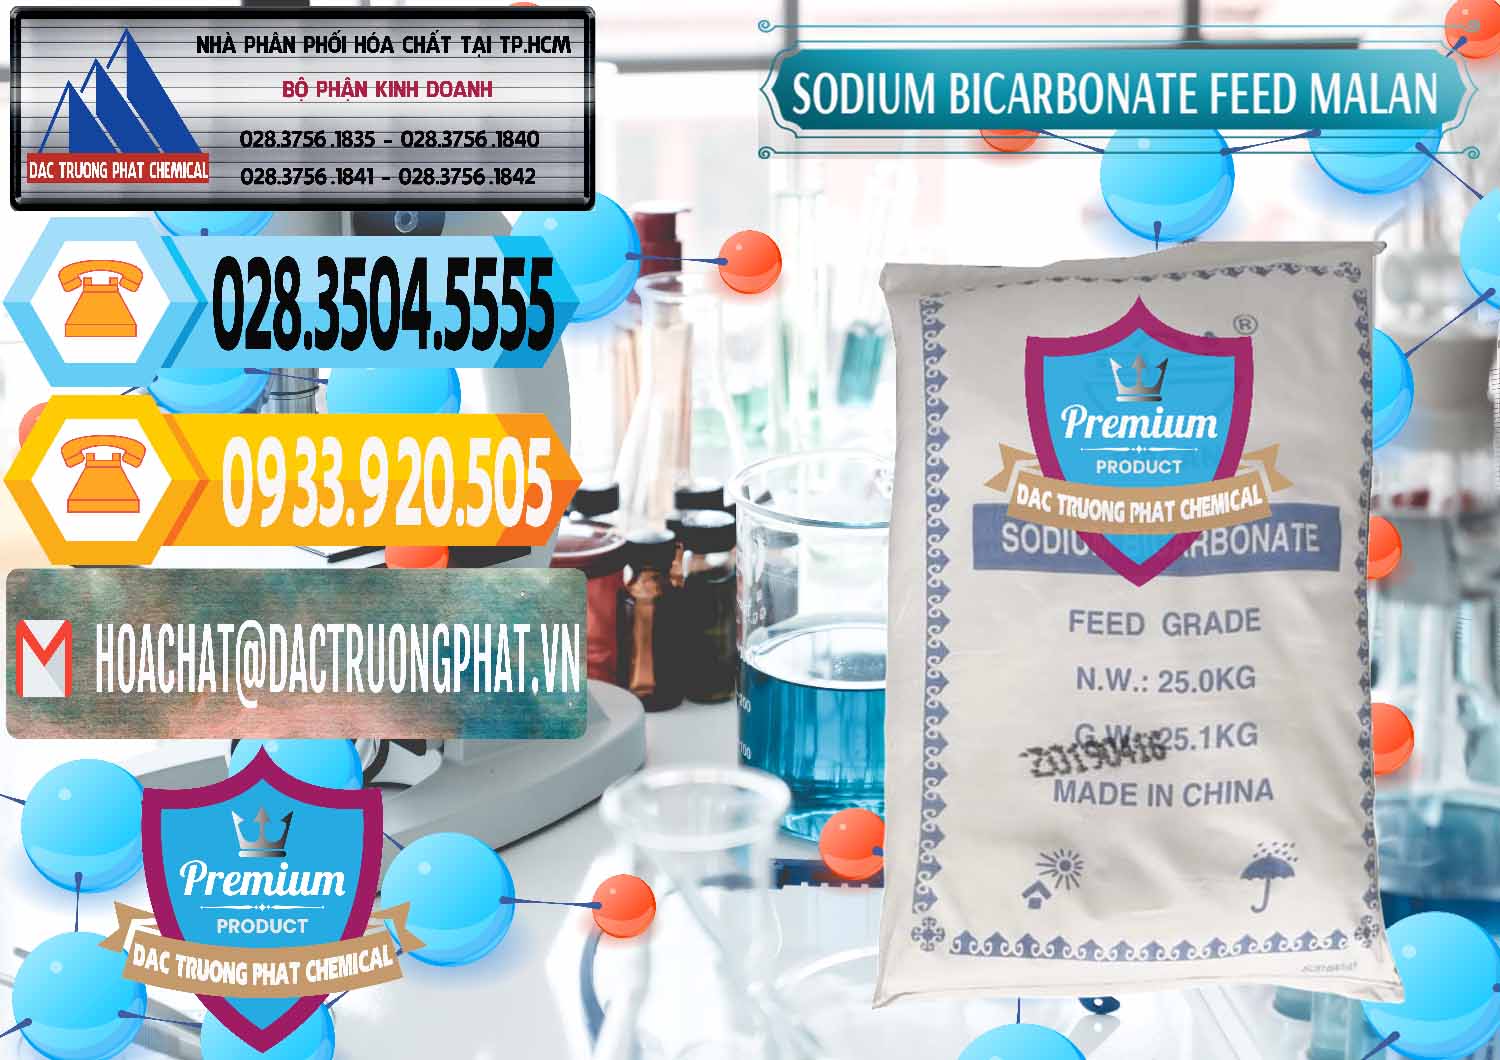 Cty cung cấp - bán Sodium Bicarbonate – Bicar NaHCO3 Feed Grade Malan Trung Quốc China - 0262 - Nơi cung cấp và phân phối hóa chất tại TP.HCM - hoachattayrua.net